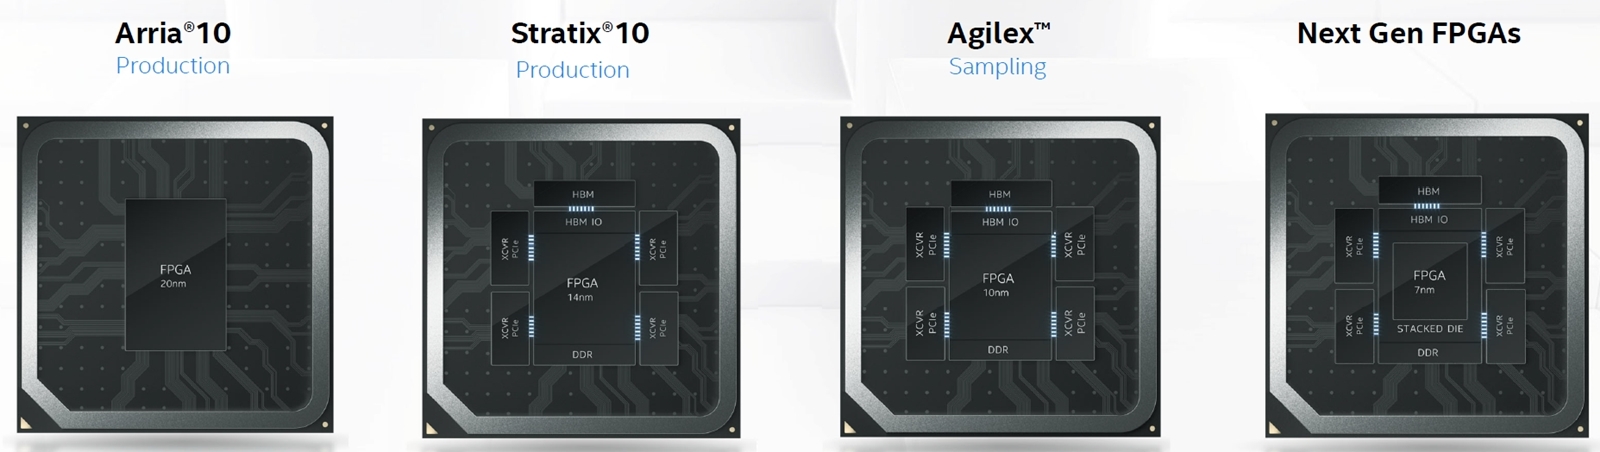 FPGAのロードマップ 20nmプロセスで造る「Arria 10」は1チップだった。14nmプロセスで造る「Stratix 10」および10nmプロセスで造る「Agilex」は2.5次元実装技術「EMIB」を使い、複数のダイで構成する。7nmプロセスで造る次世代FPGAはEMIBに加えて3次元実装技術の「Foveros」を使い、さらに多数のダイで構成される模様。20年8月にオンライン開催した「Architecture Day 2020」で見せたスライド。（出所：Intel）